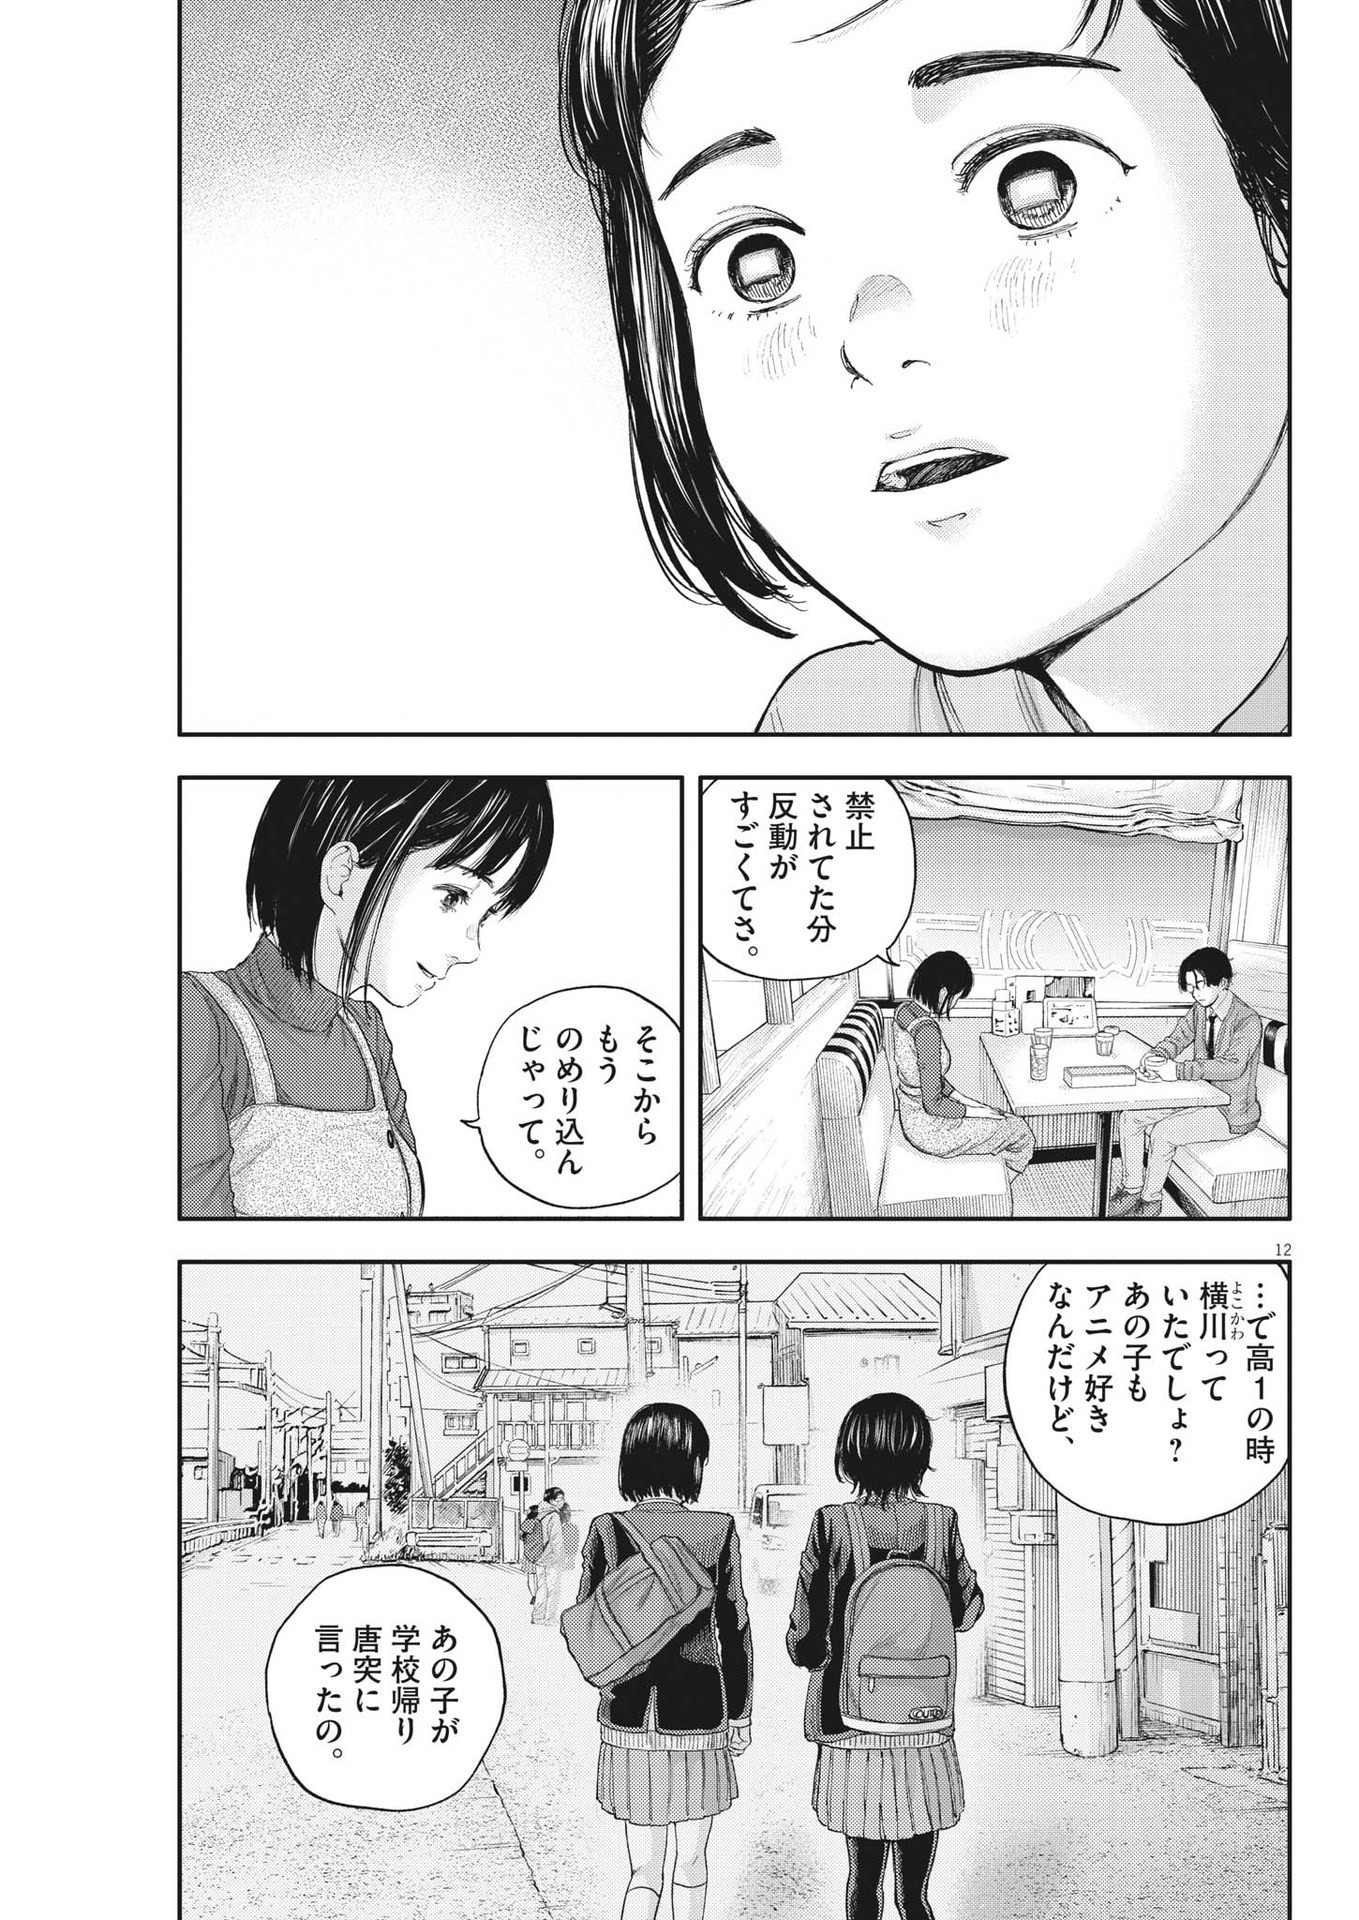 Yumenashi-sensei no Shinroshidou - Chapter 2 - Page 12